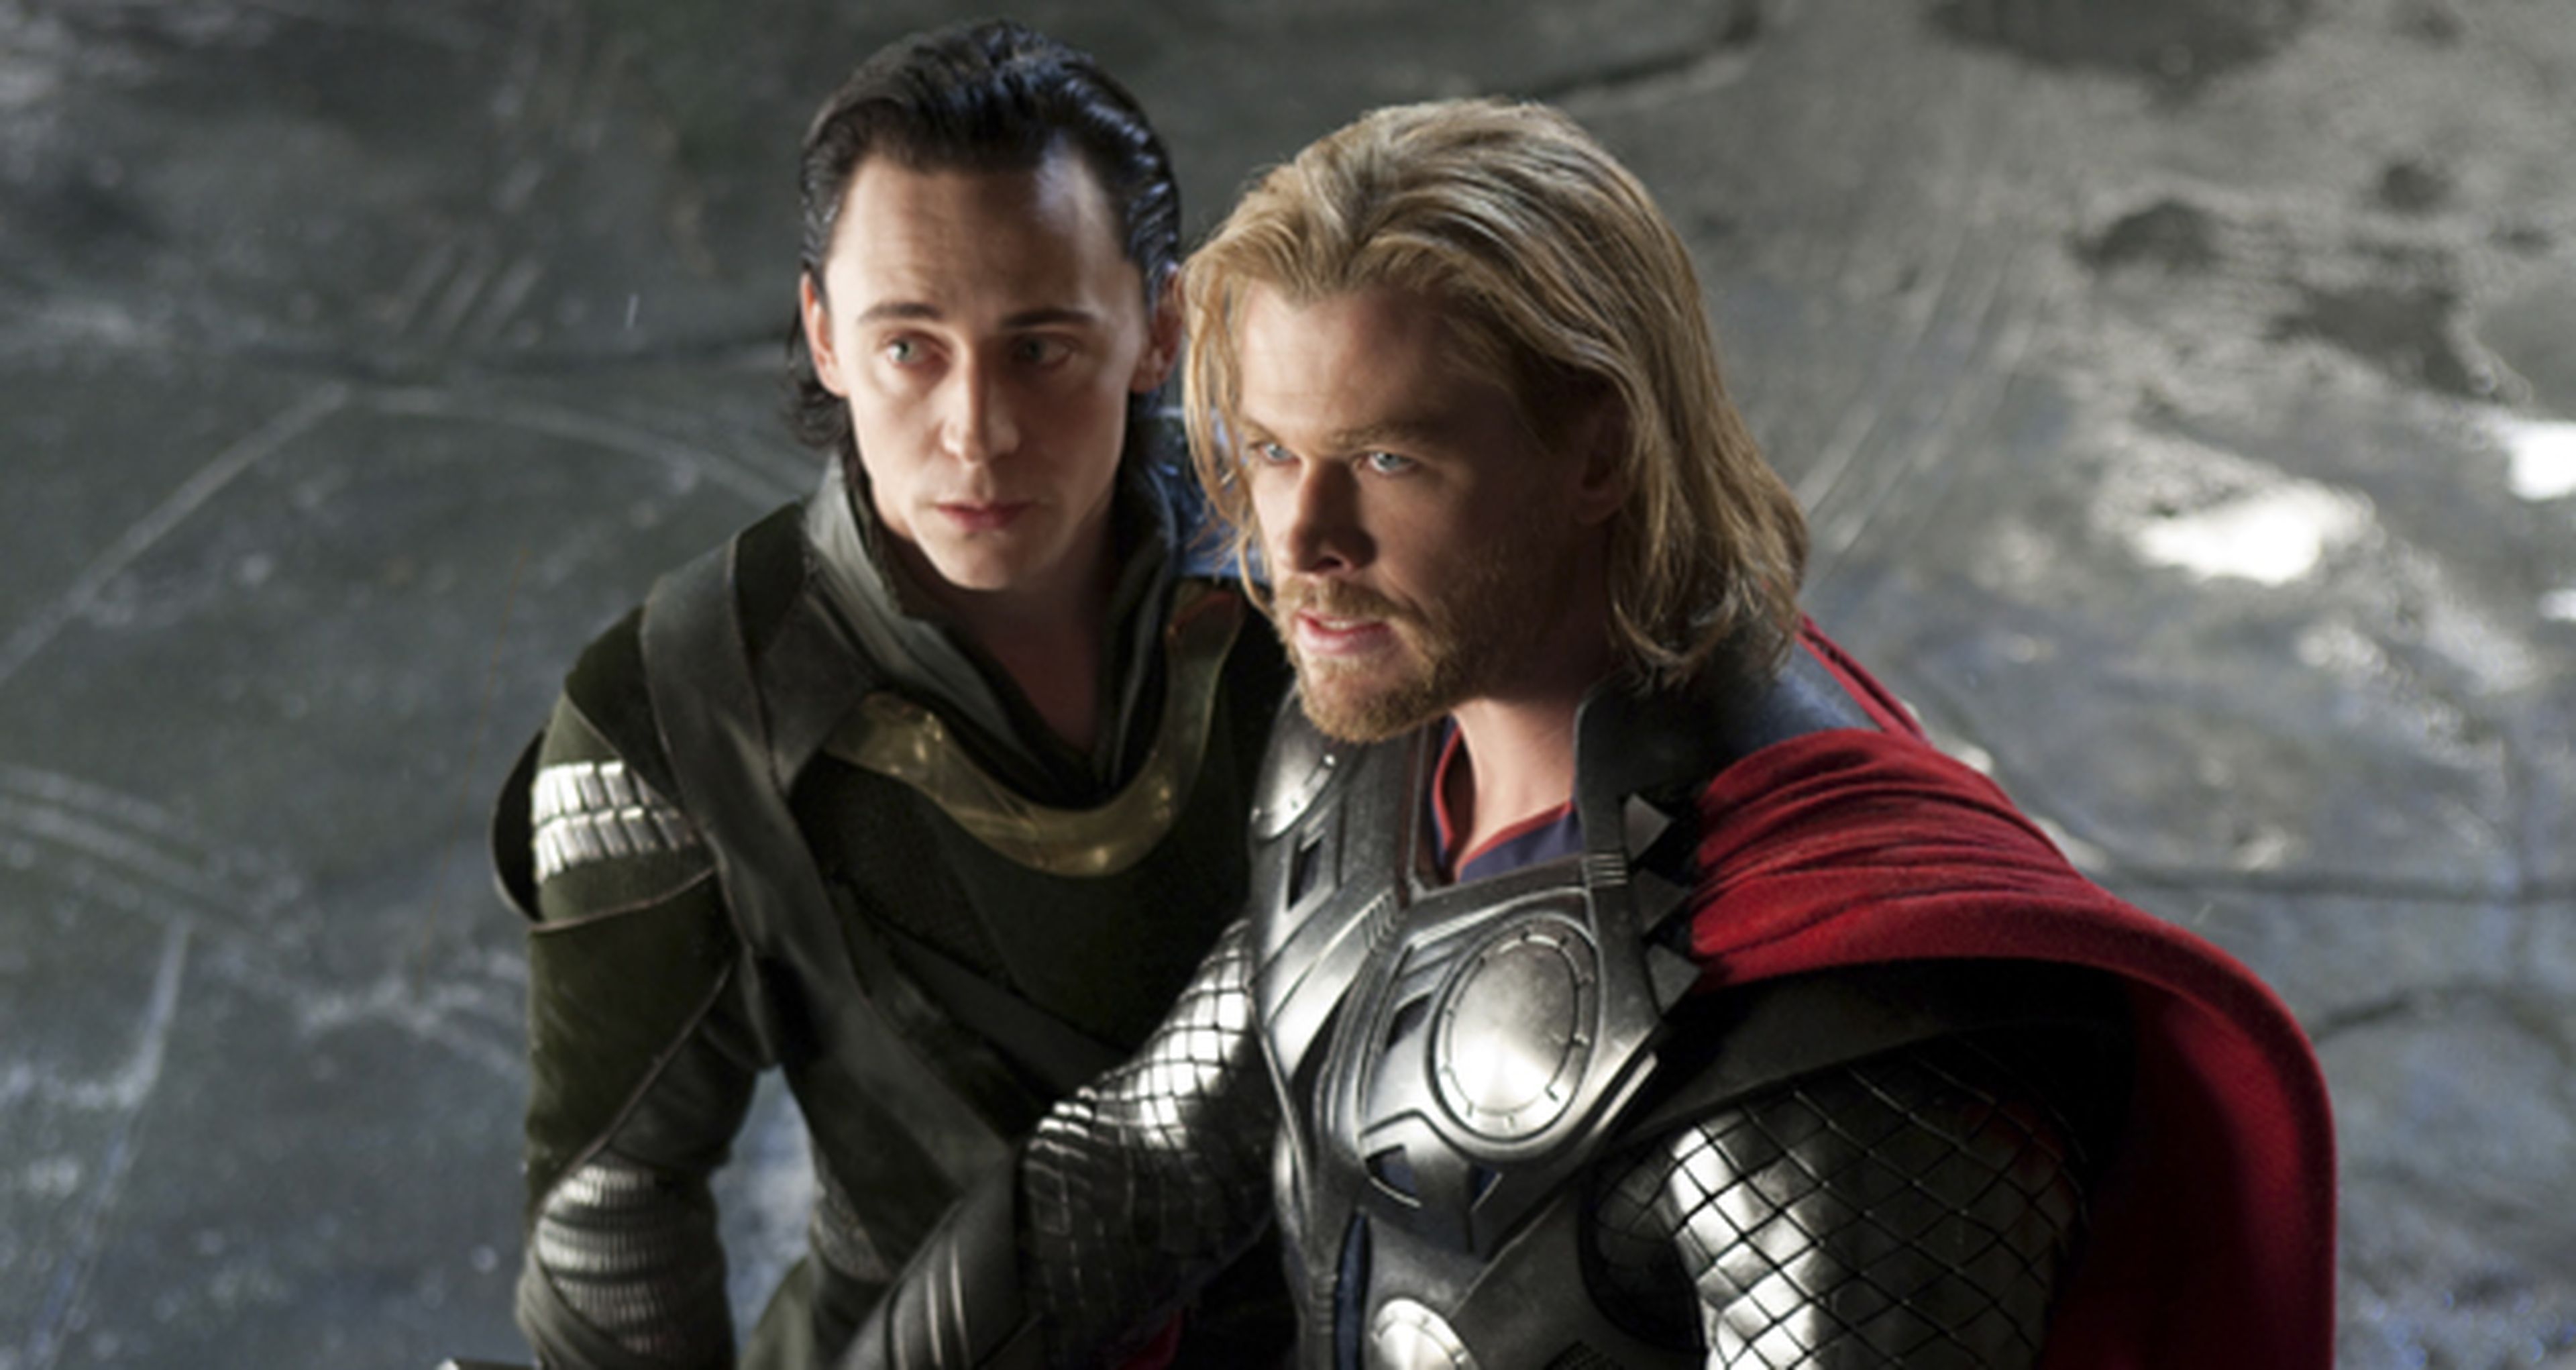 Cine de superhéroes: crítica de Thor